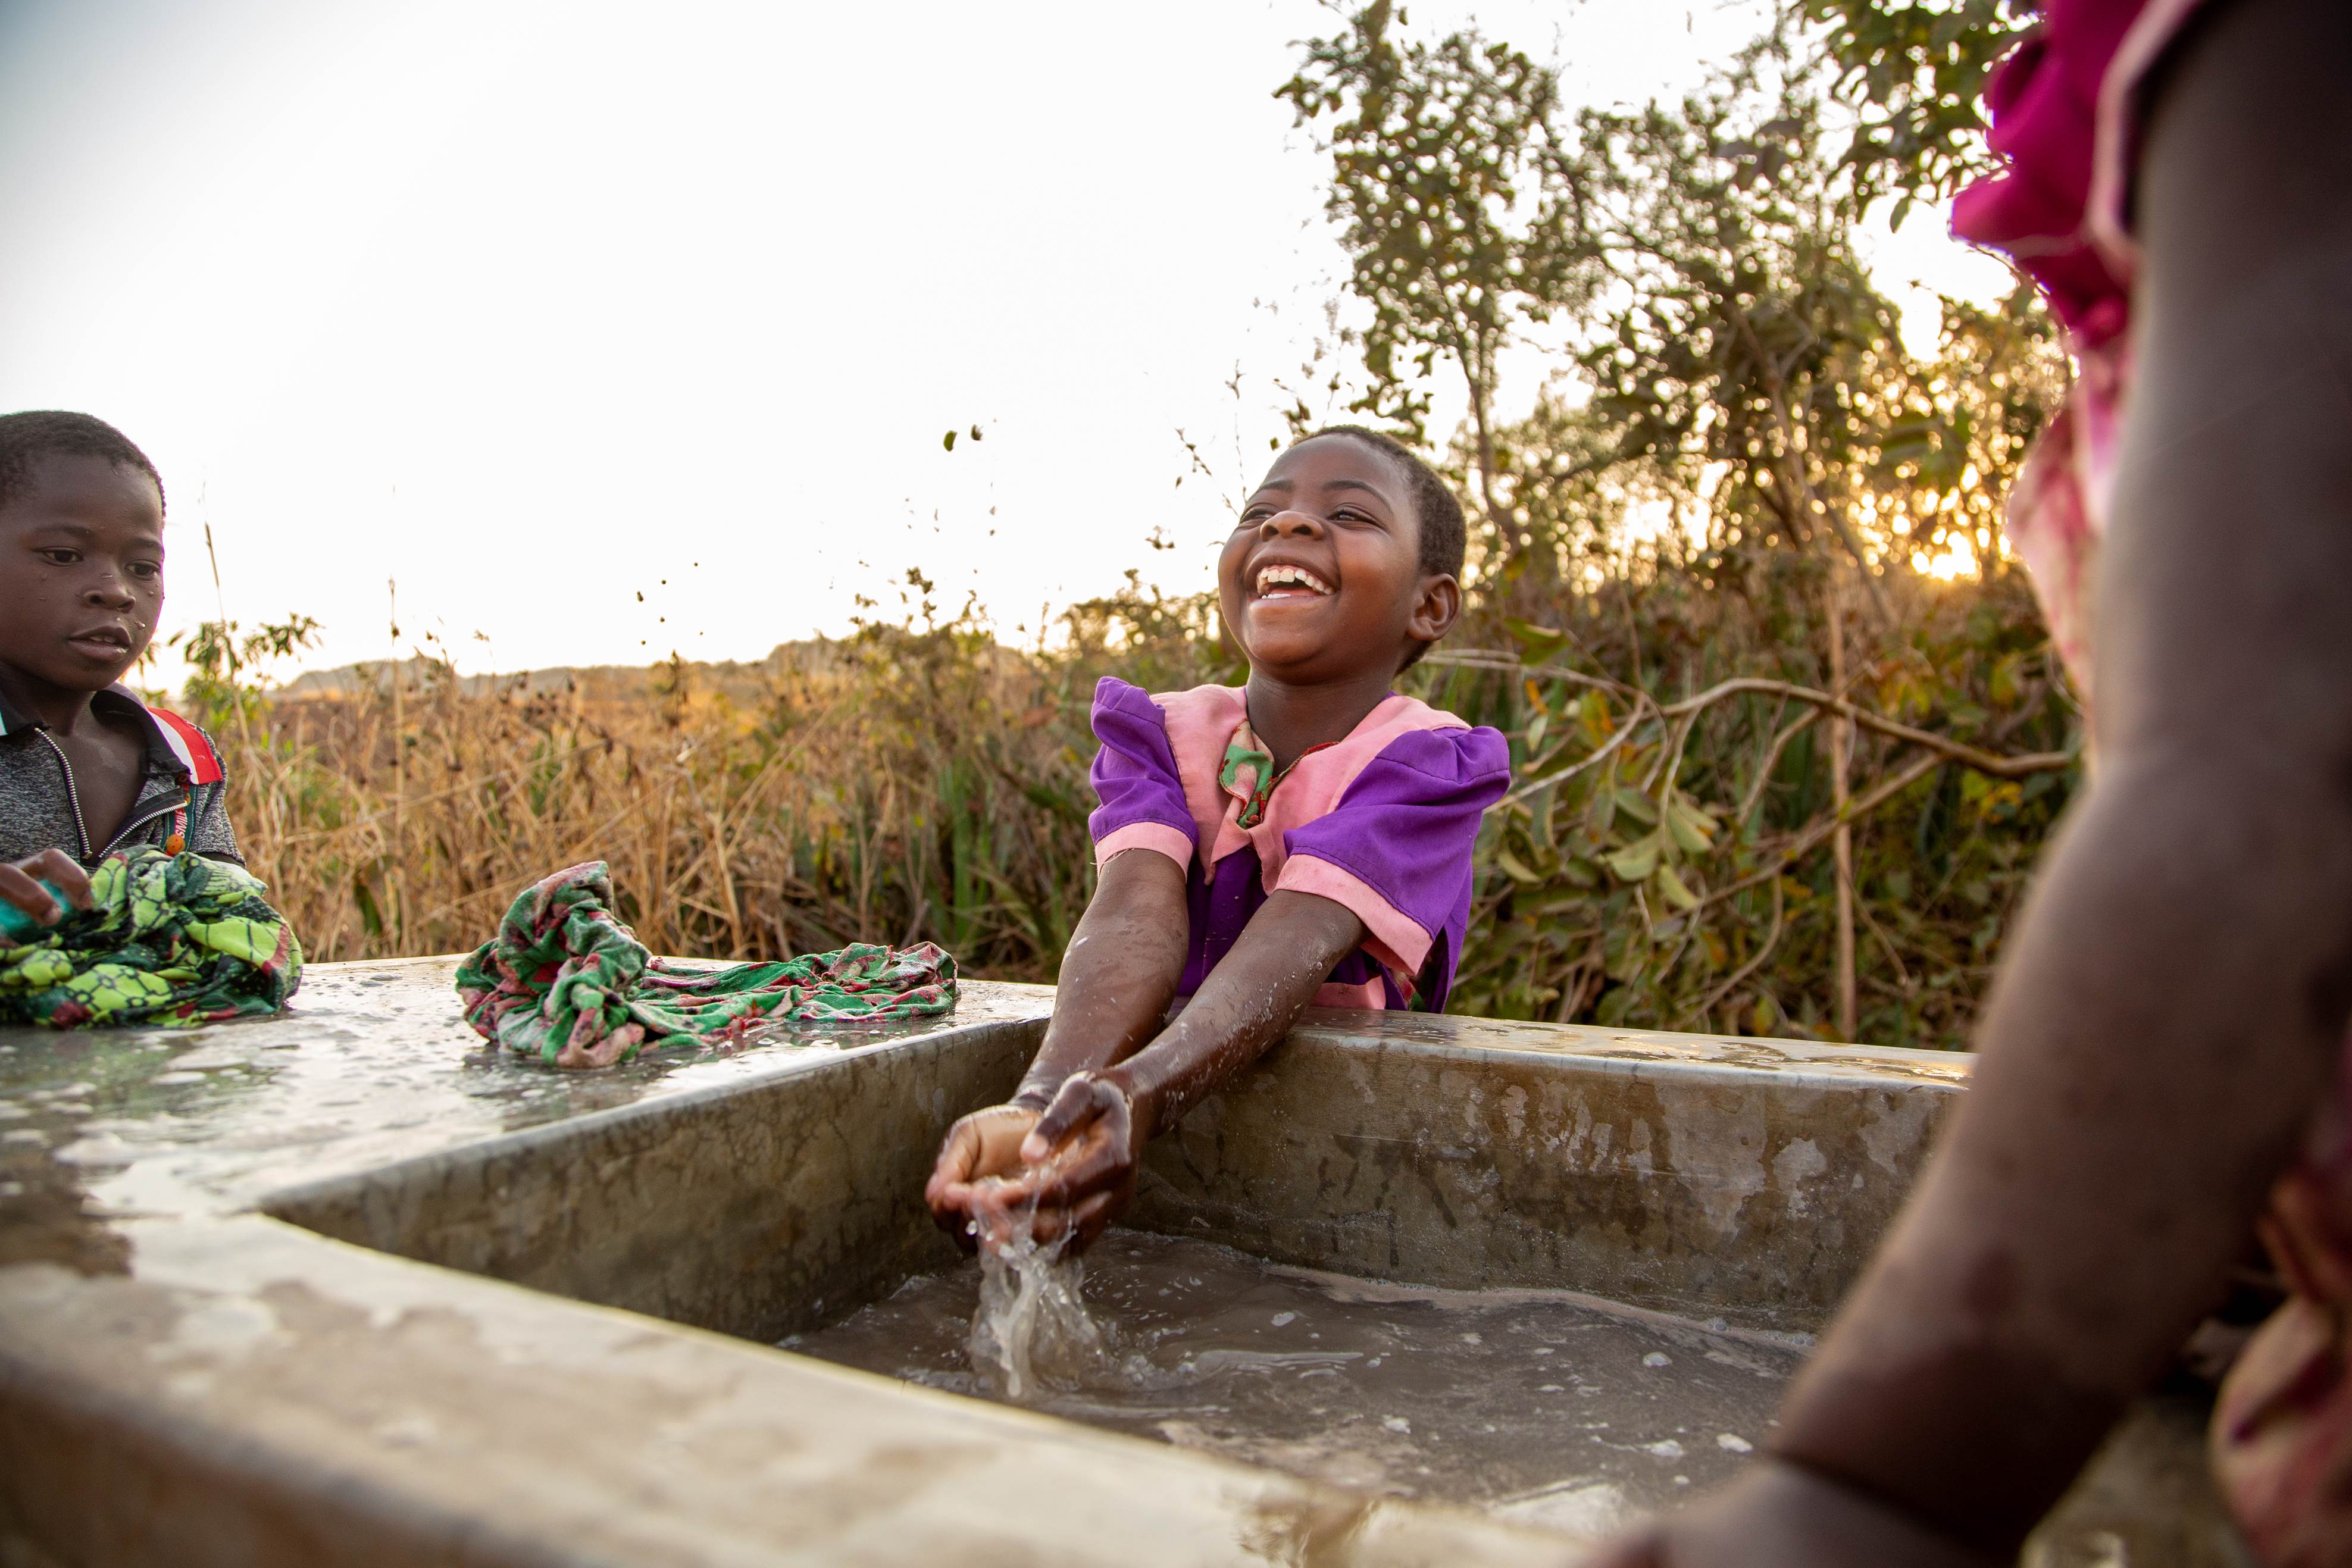 Niña de Malawi con un vestido morado brillante riendo mientras juega con el agua de un pozo local.